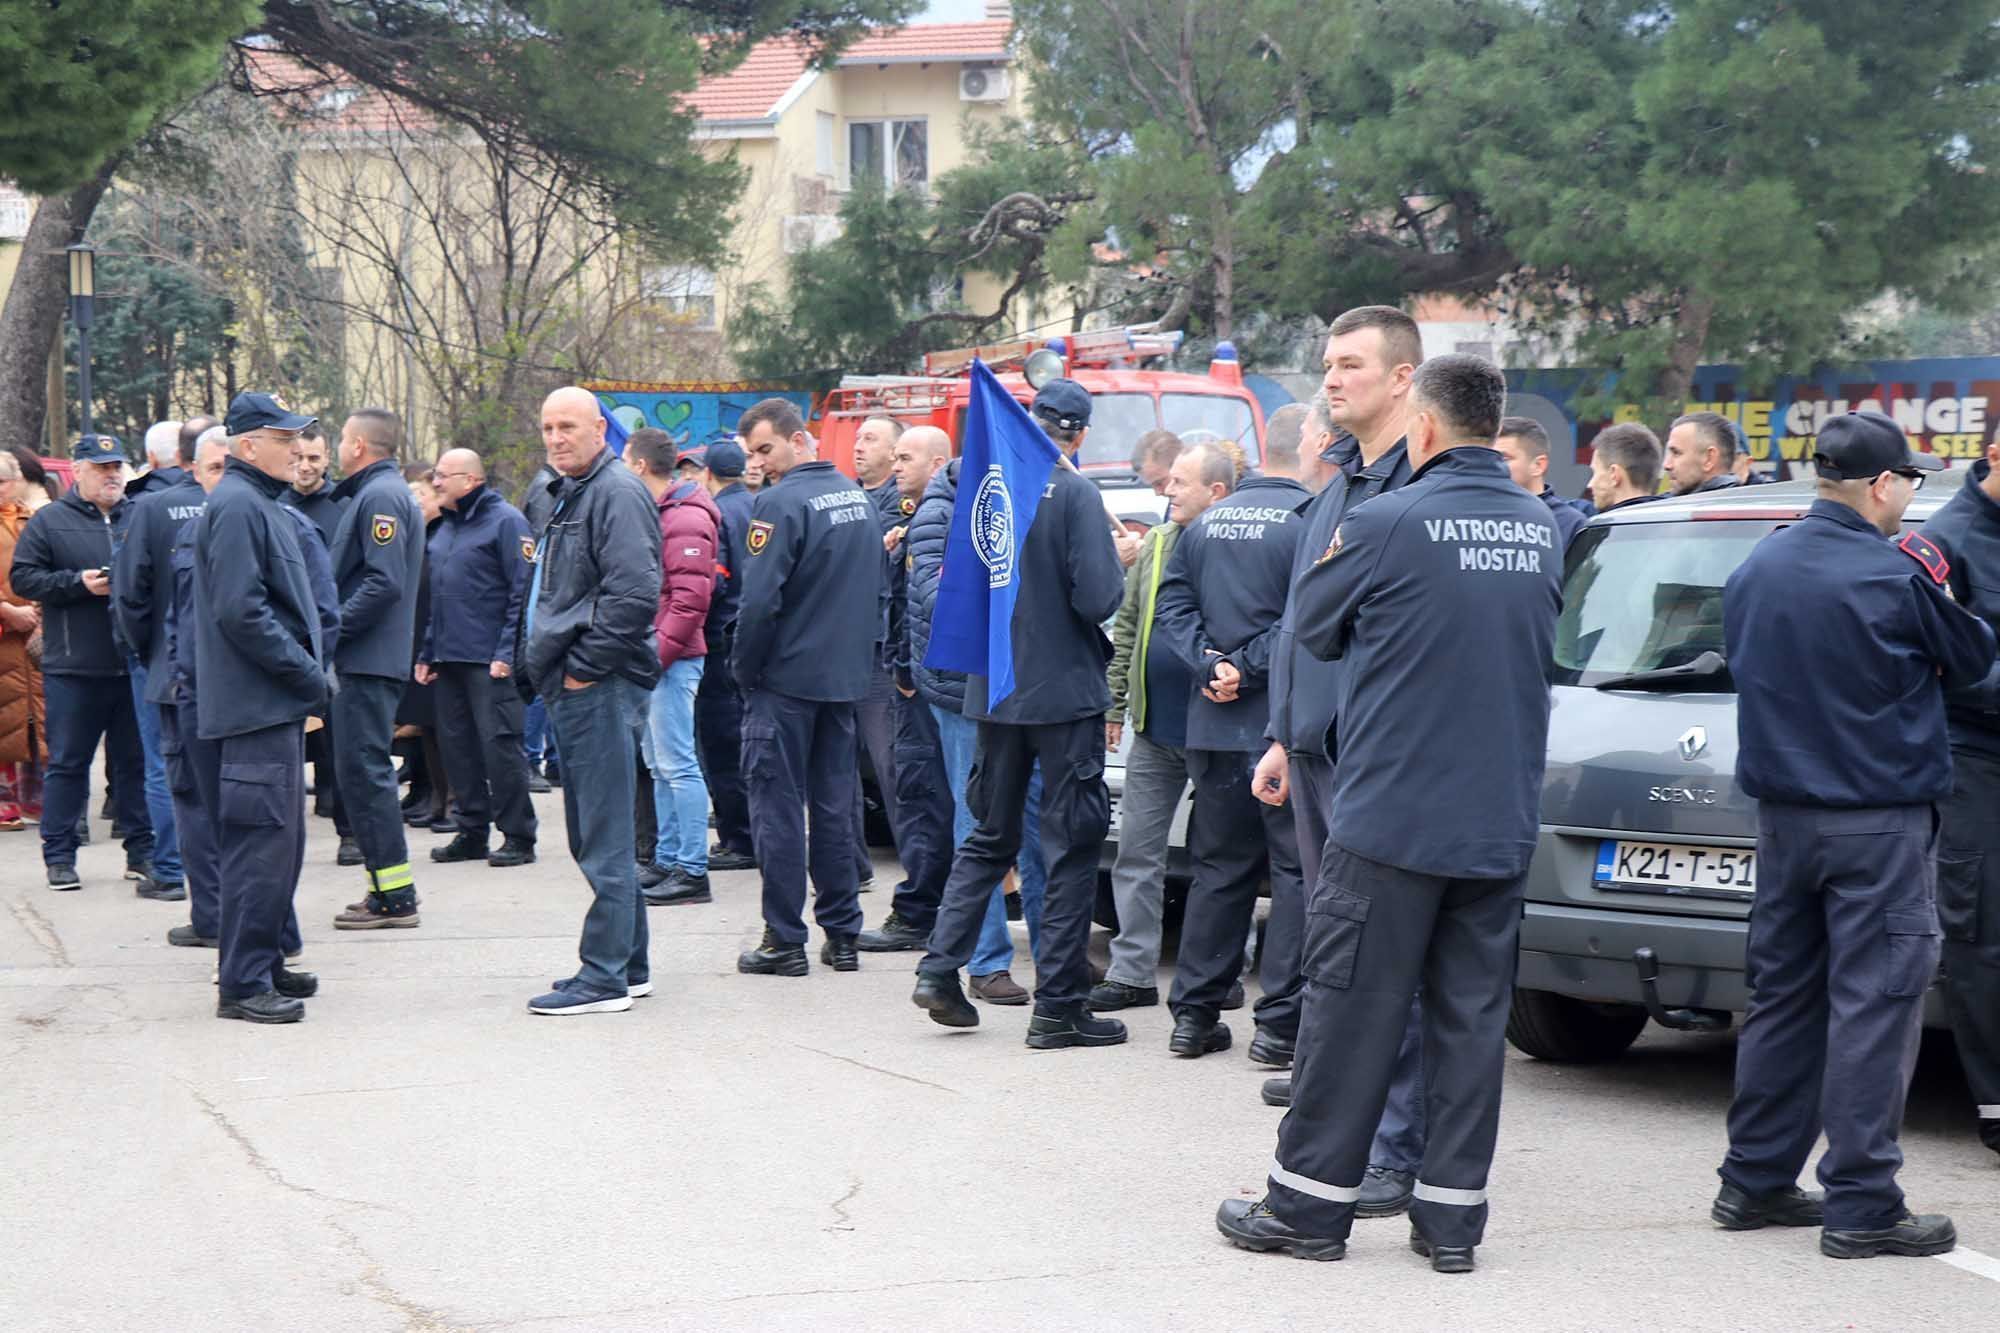 Sindikati prosvjeduju u Mostaru, a poslodavci mirno čekaju kraj godine